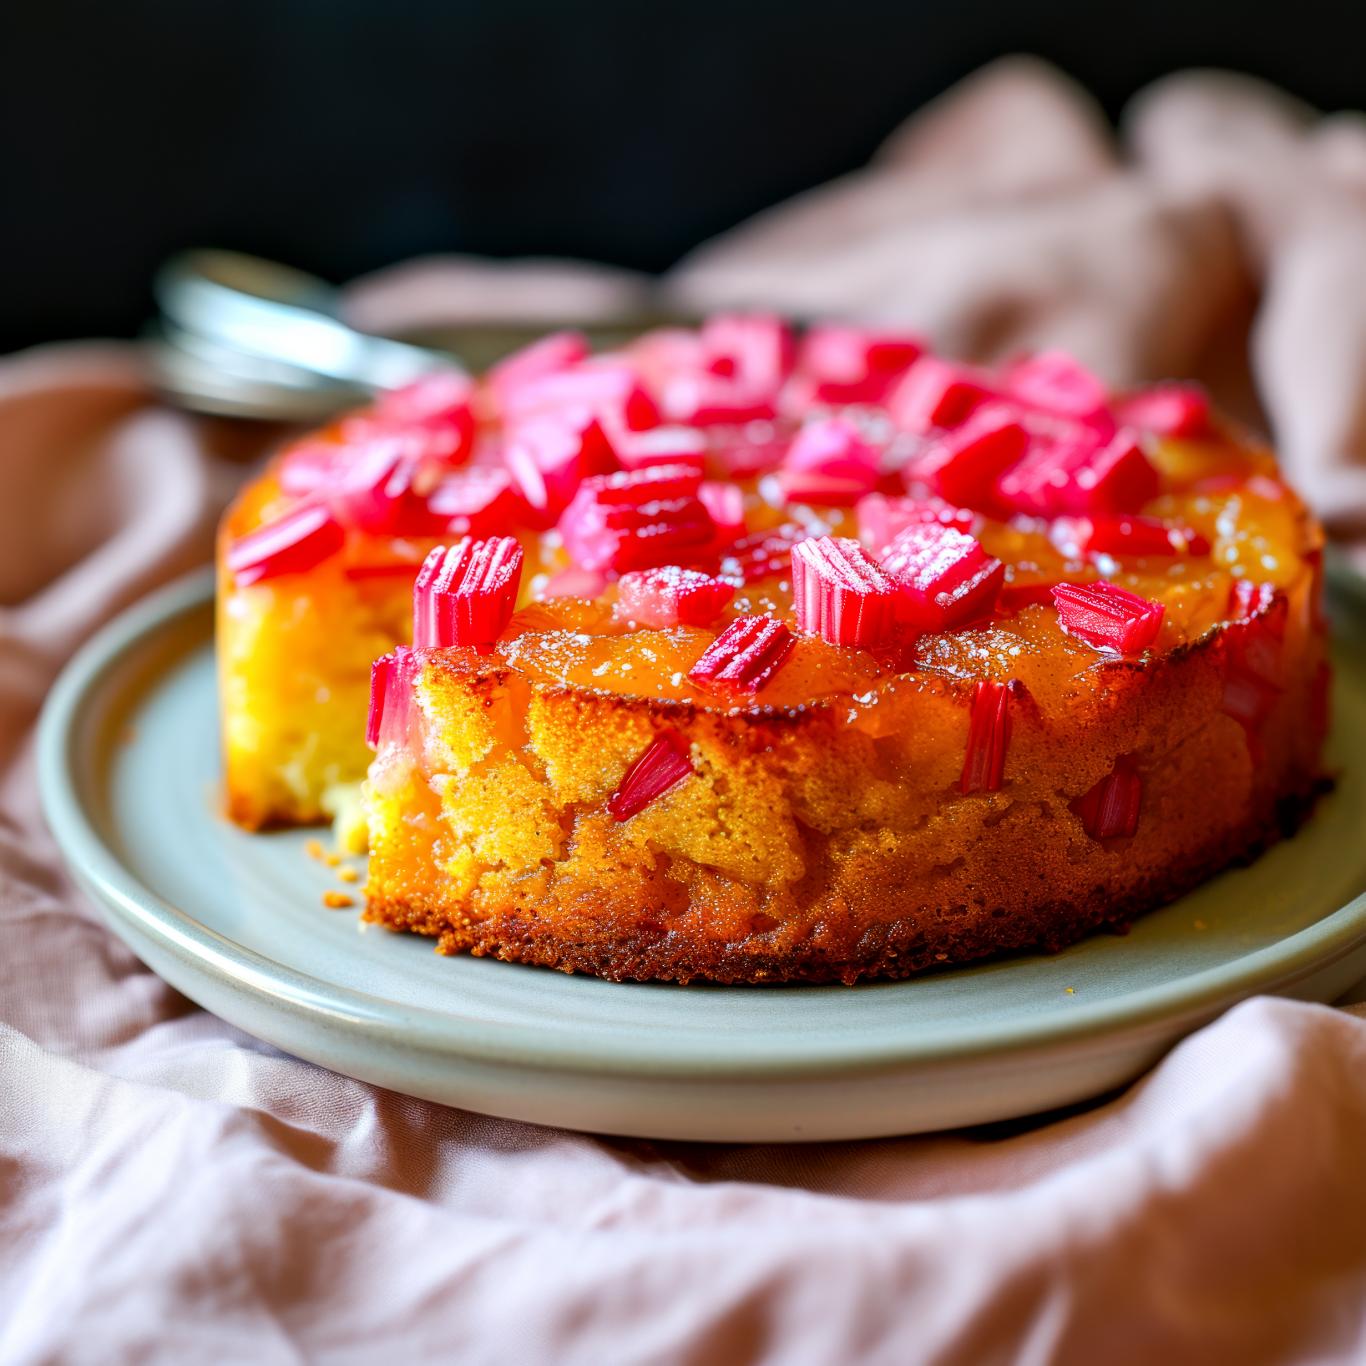 “très bon et facile à faire” : voici notre recette du gâteau renversé à la rhubarbe notée 5/5 par nos lecteurs